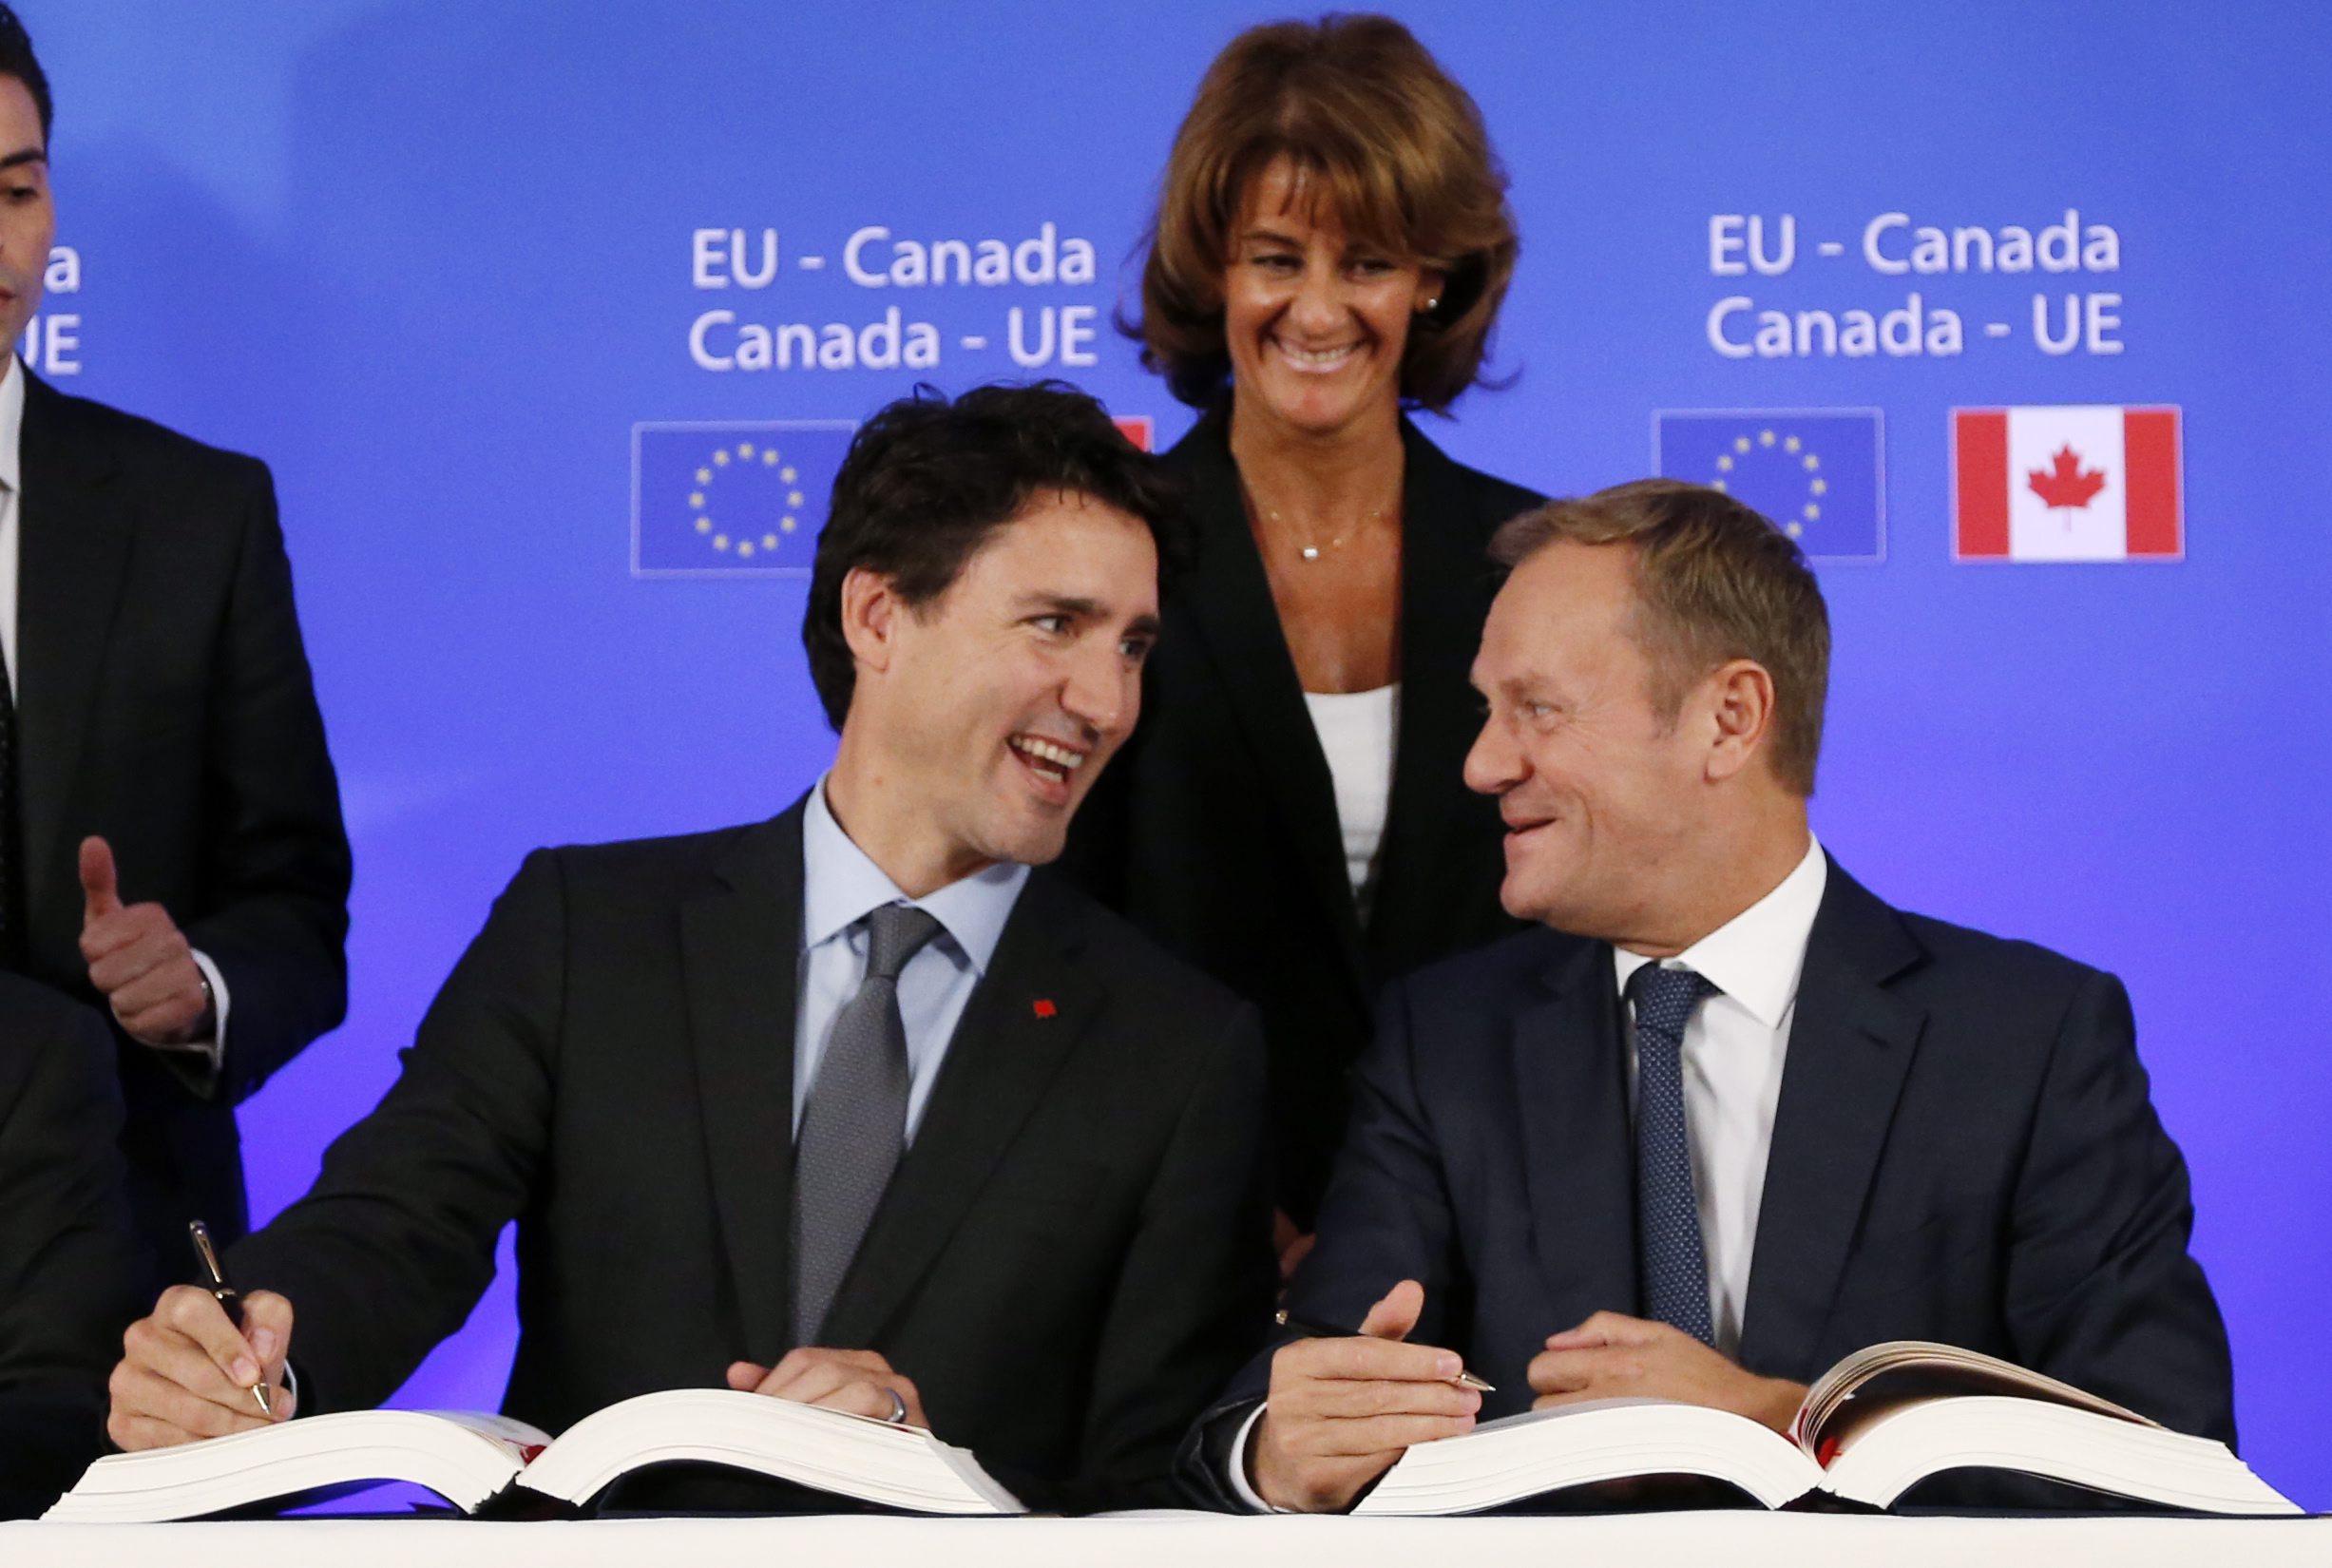 Blije gezichten in Brussel toen Canada en de EU het handelsverdrag CETA ondertekenden. Maar het verdrag moet nog over de grootste hobbels heen.